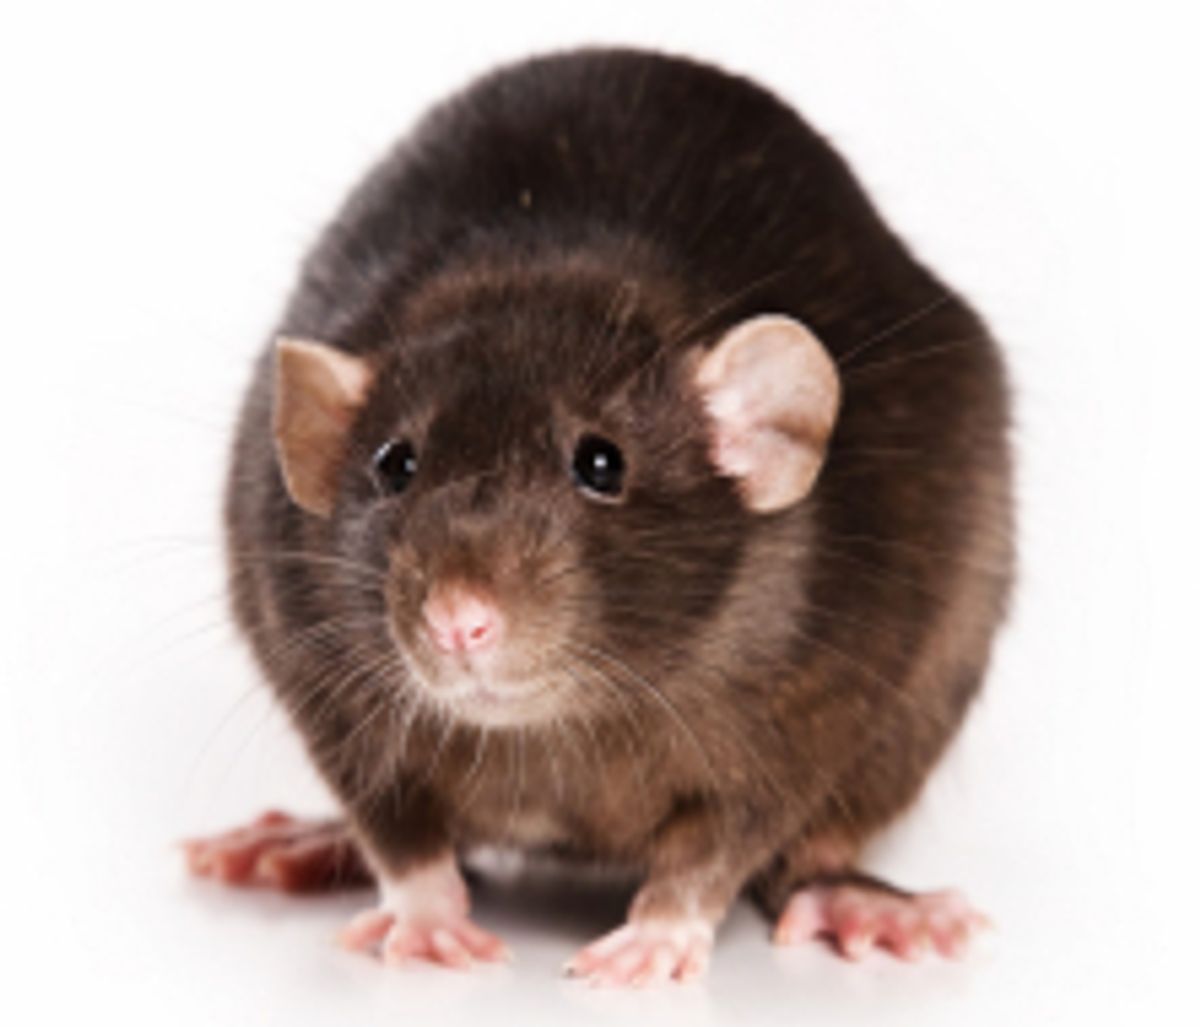 Kombinera Ljud och Ljus för att Skrämma bort Råttor: En Innovativ lösning mot gnagare